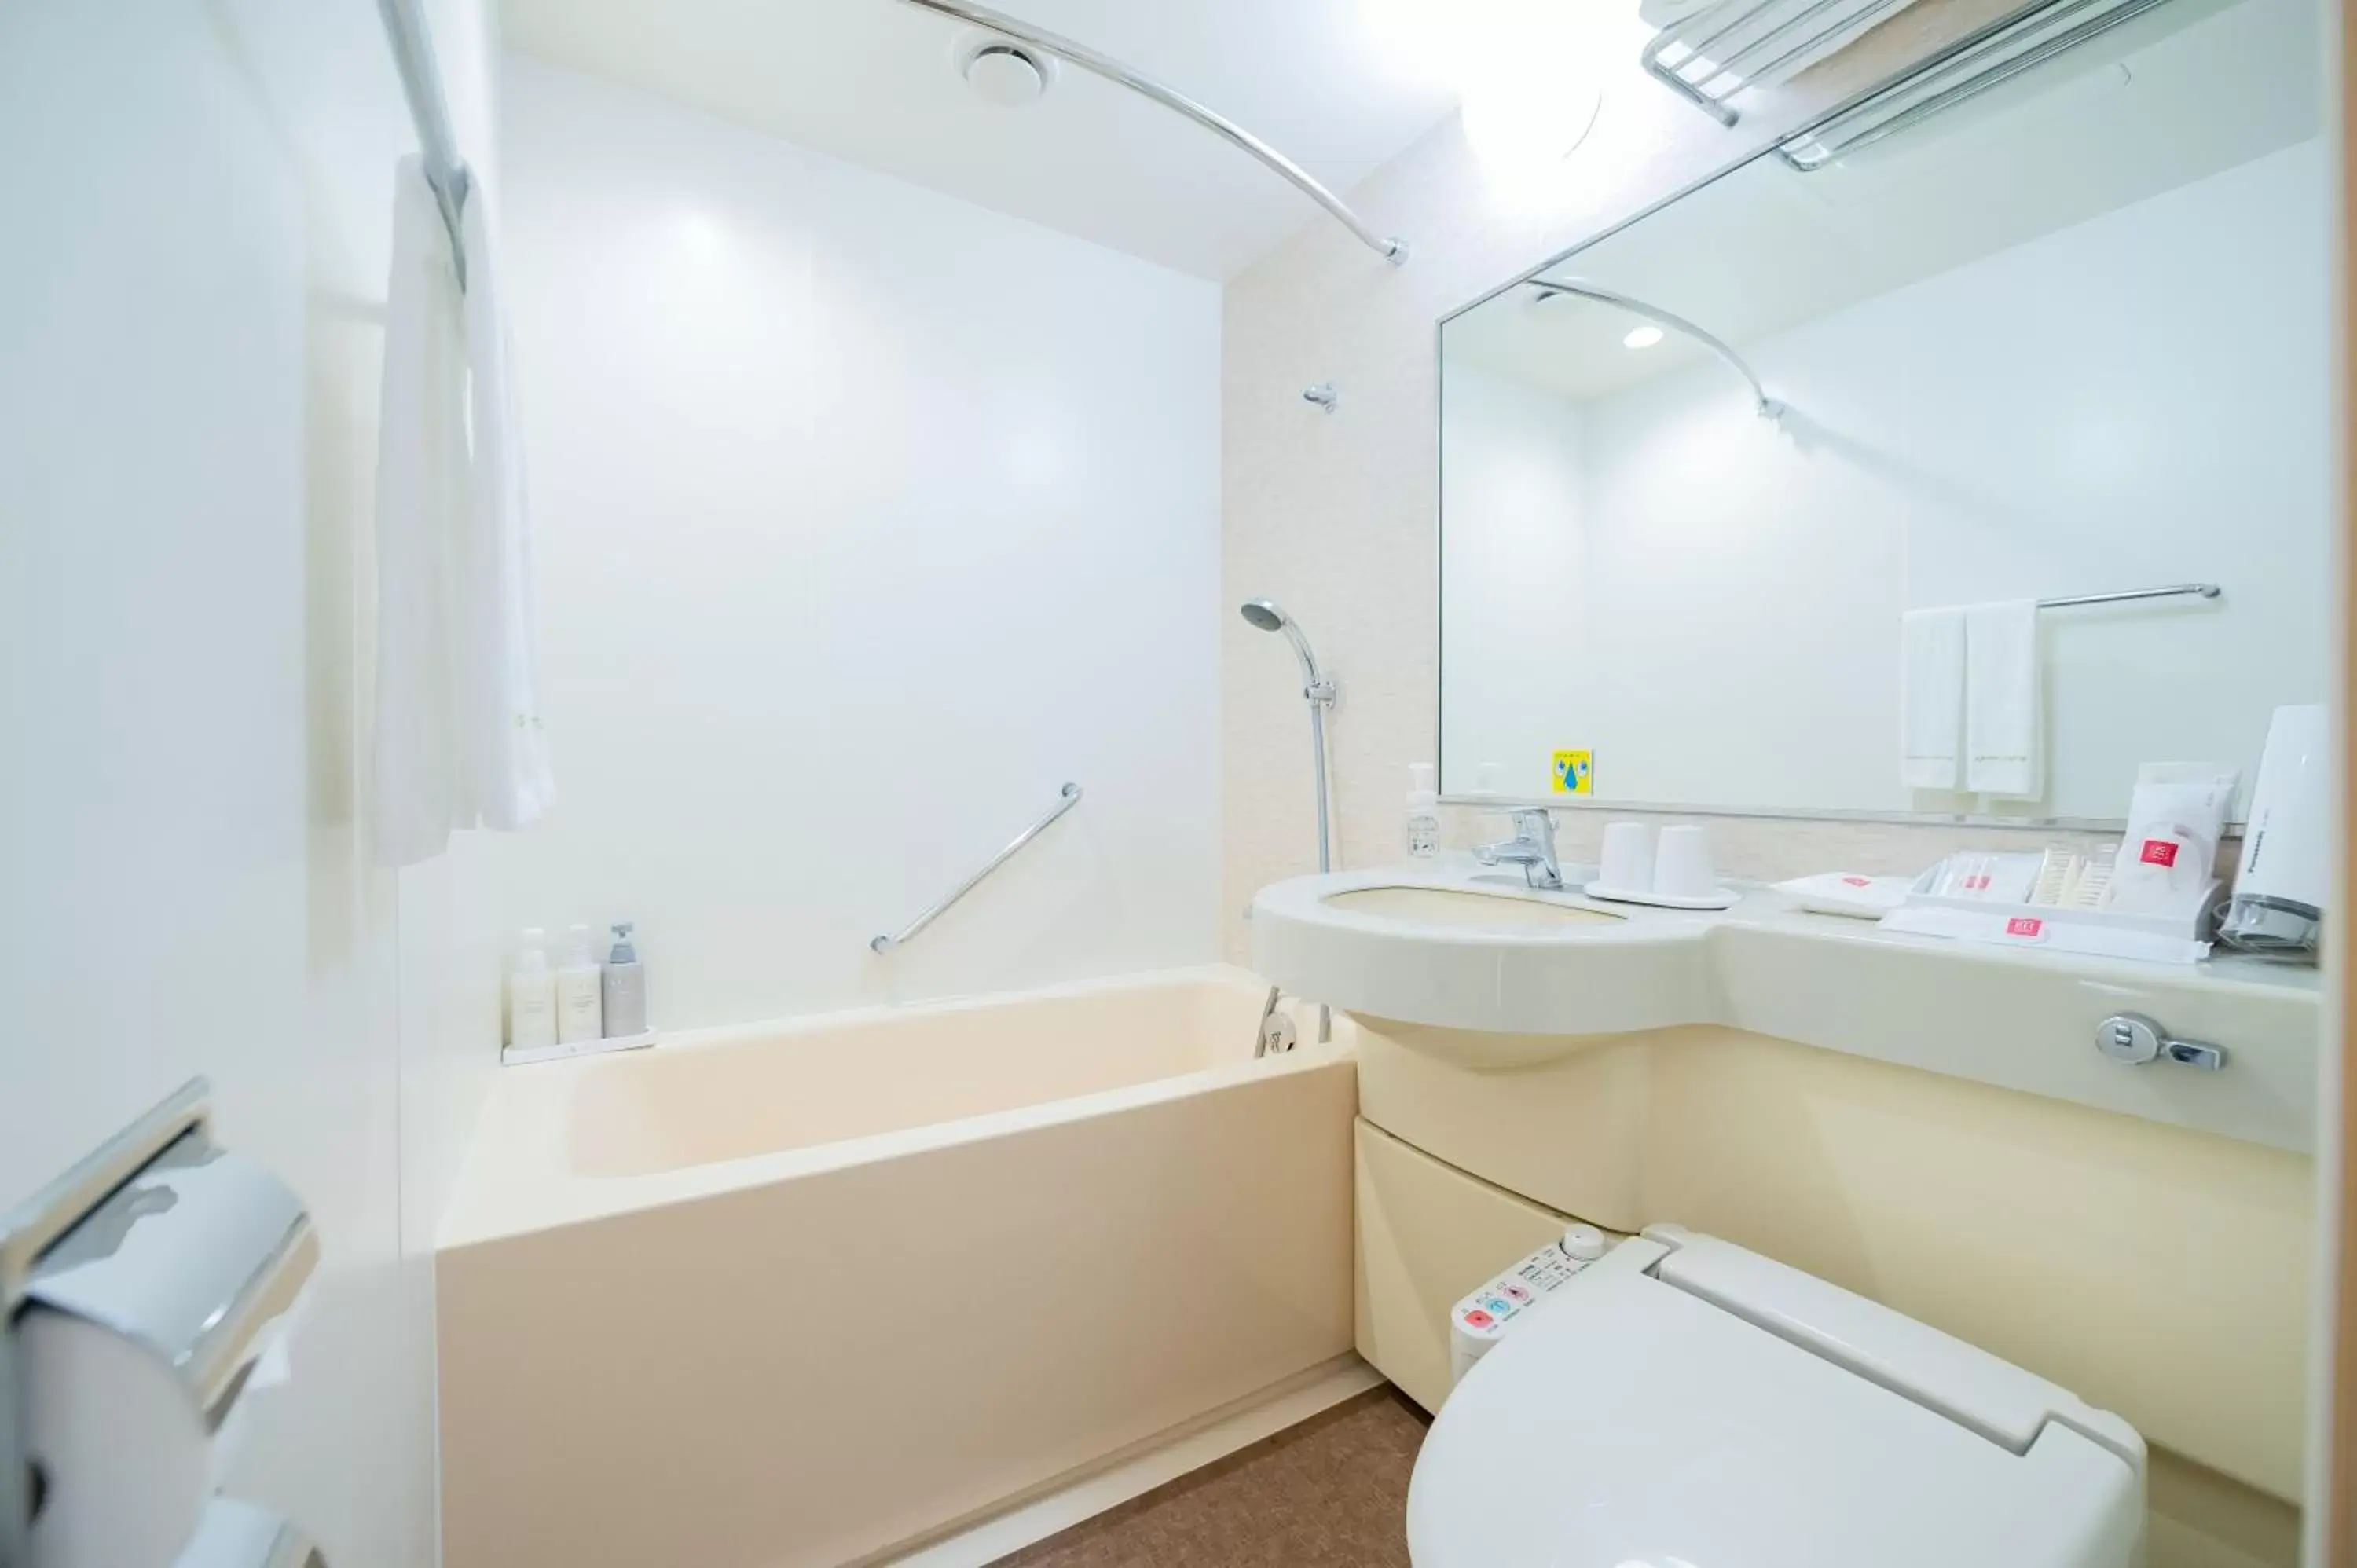 Bathroom in Matsuyama Tokyu REI Hotel